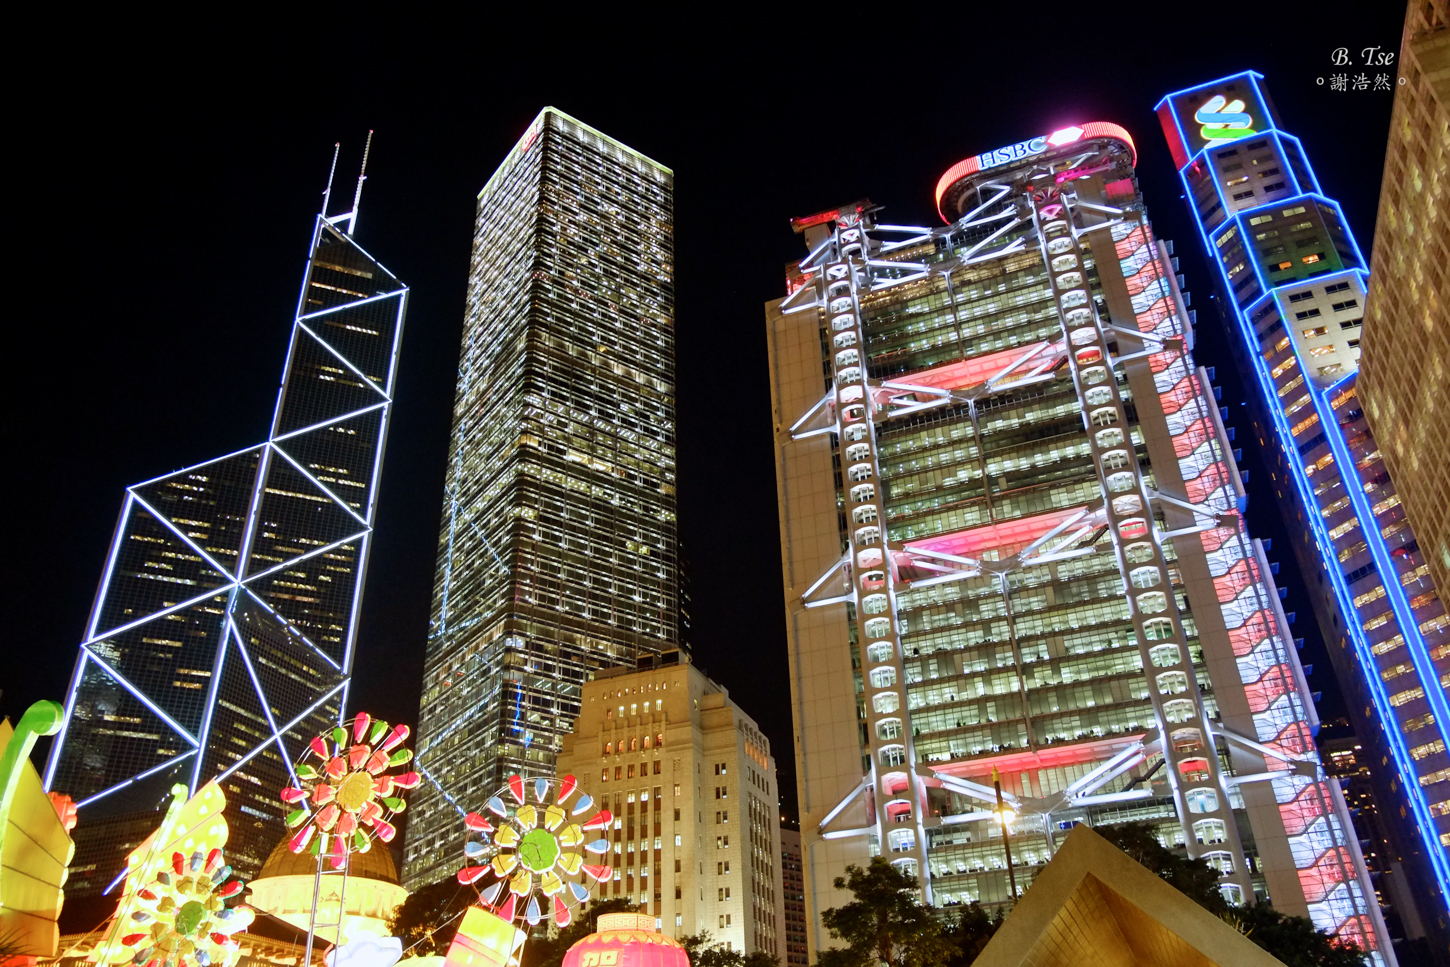 BOC, Cheung Kong Center, HSBC building, Standard Chartered Bank building